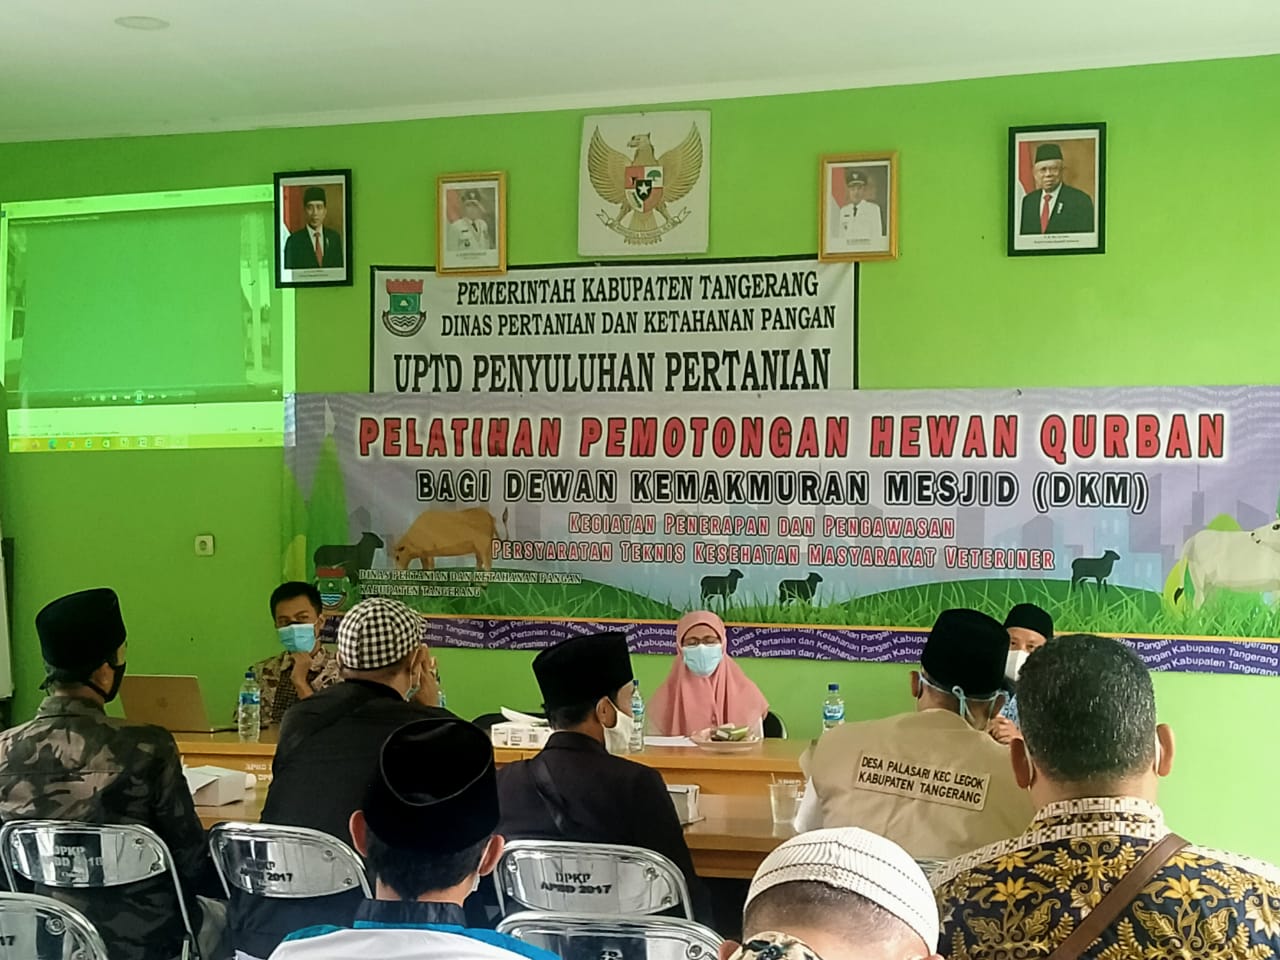 Dinas Pertanian Dan Ketahan Pangan (Distan ) mengadakan pelatihan pemotongan hewan kurban kepada para dewan kemakmuran masjid (DKM) di setiap Kecamatan se-Kabupaten Tangerang, Rabu 22 Juni 2021.